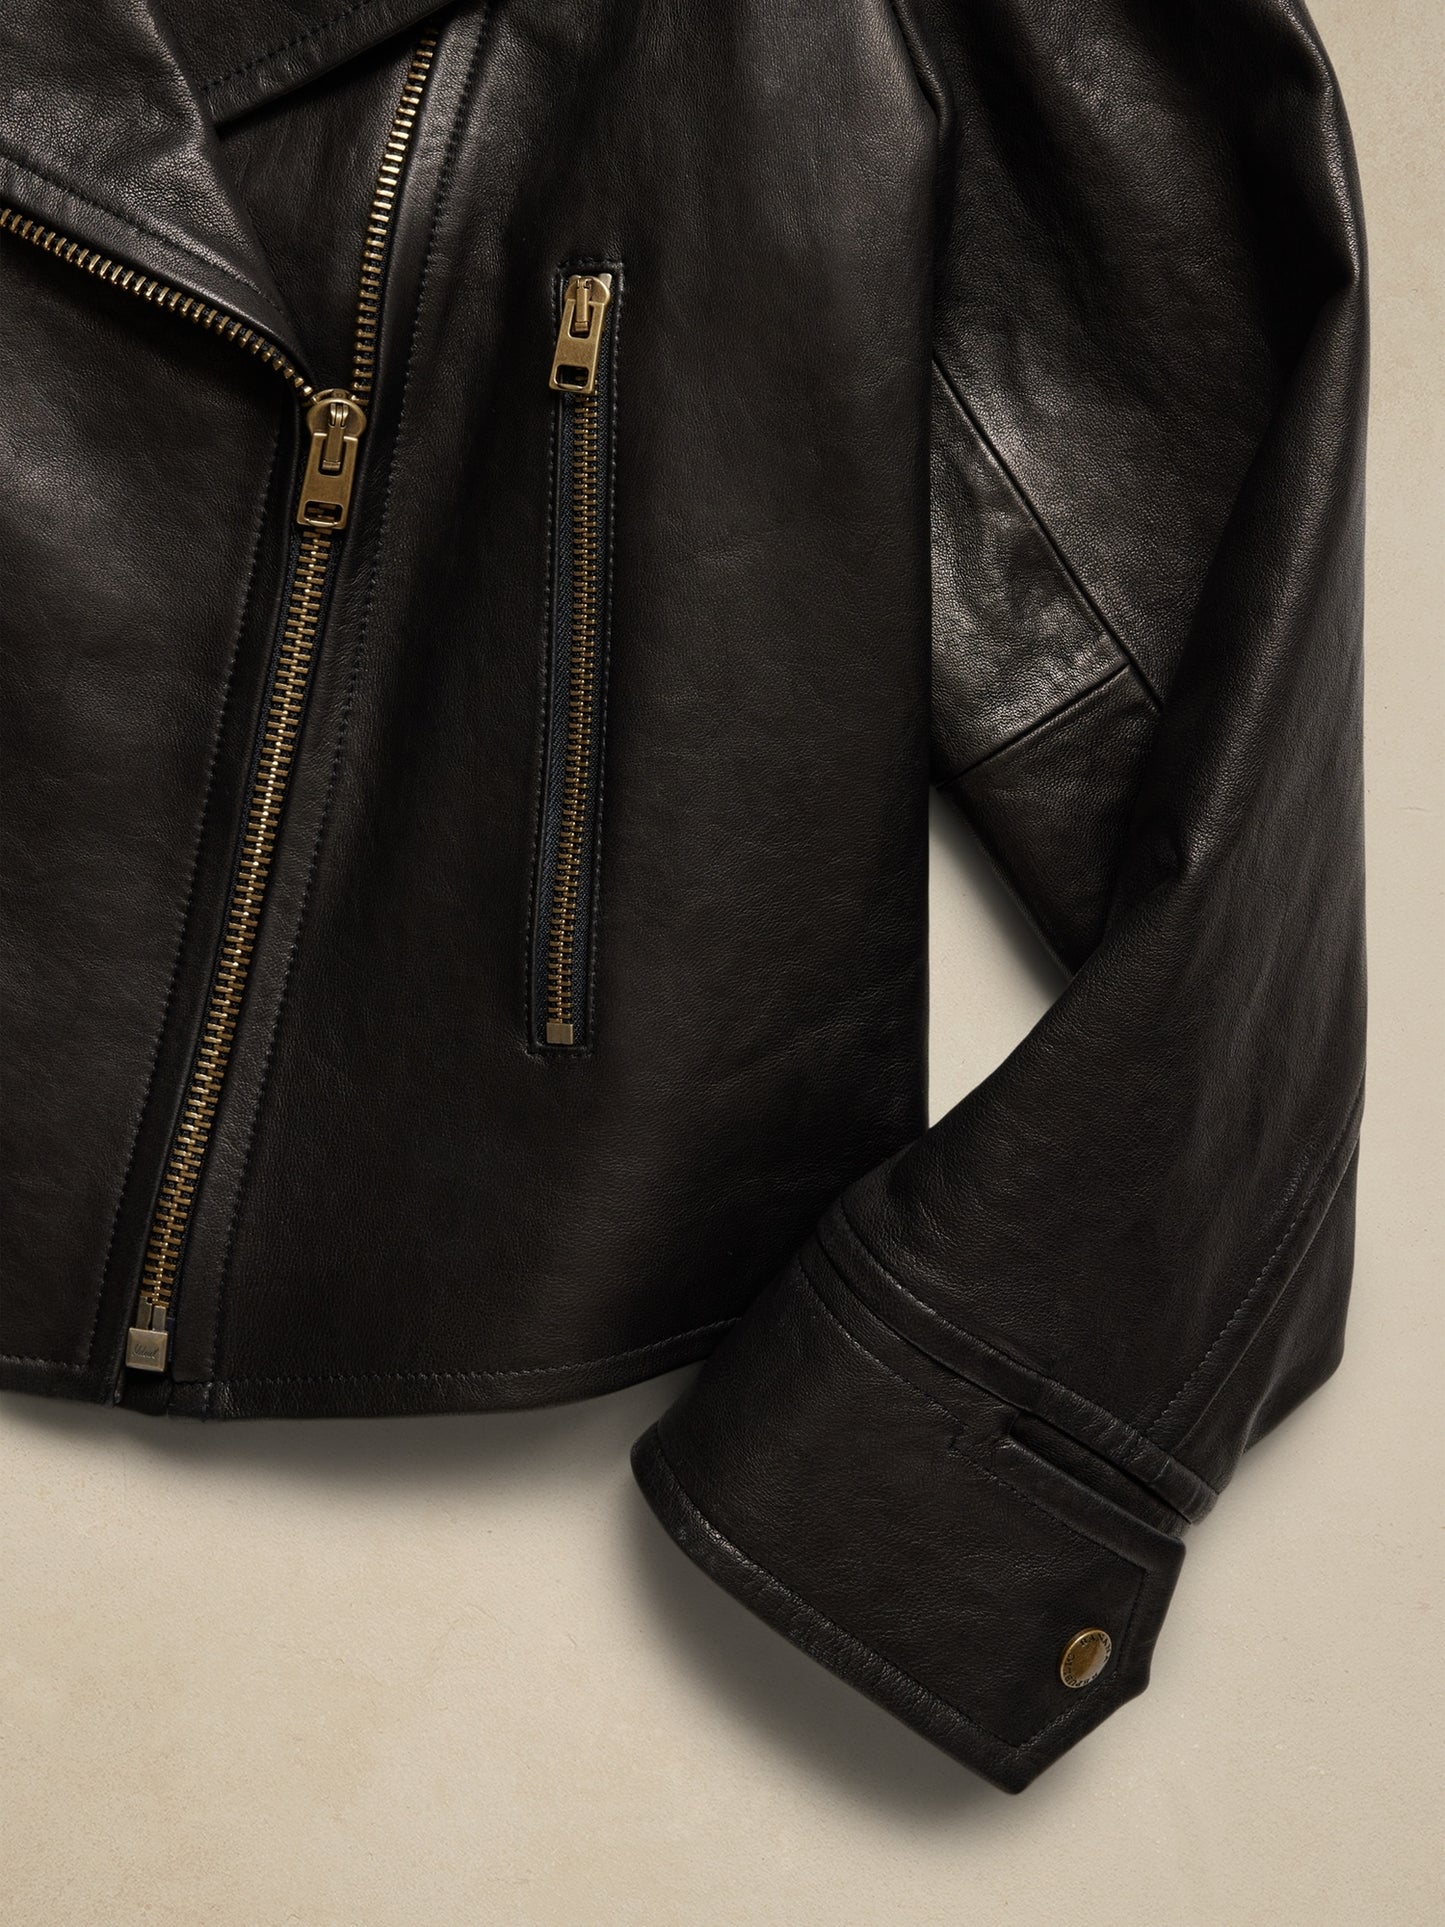 Enola Leather Moto Jacket